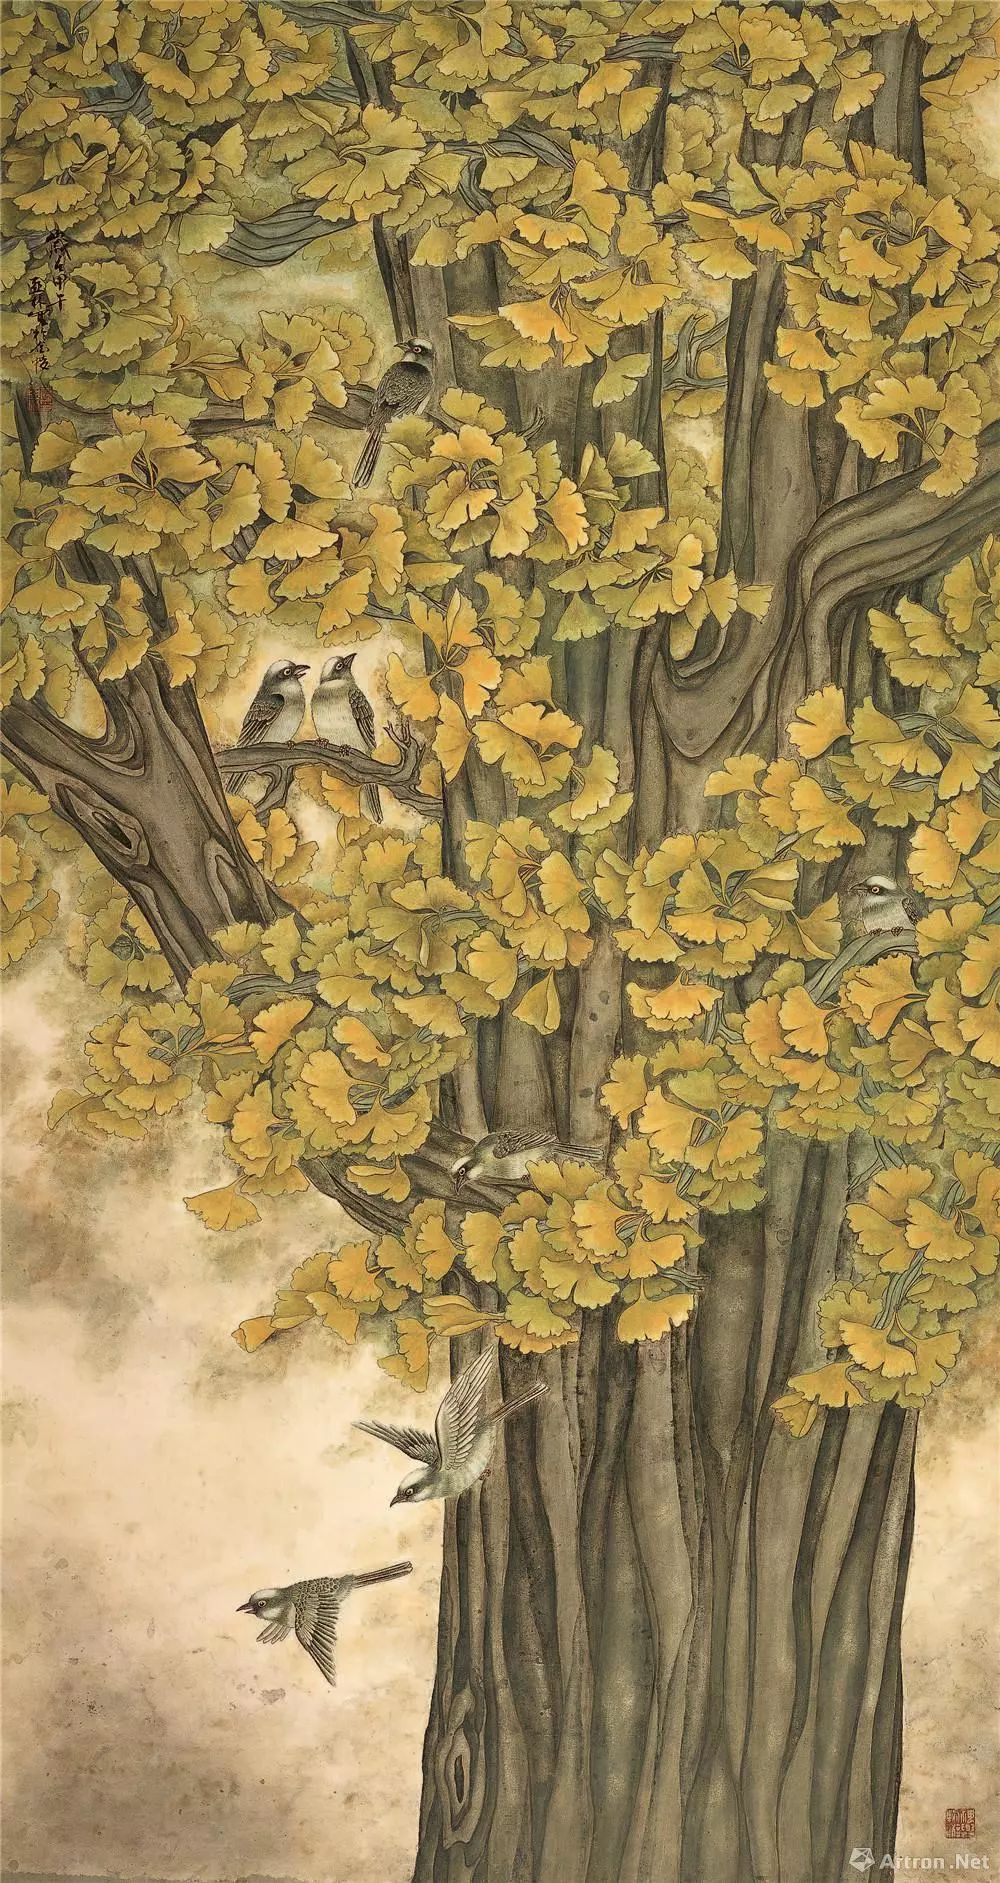 文化 正文 《肯将金色撒故园》中的这棵大银杏树原型,就在省文化厅